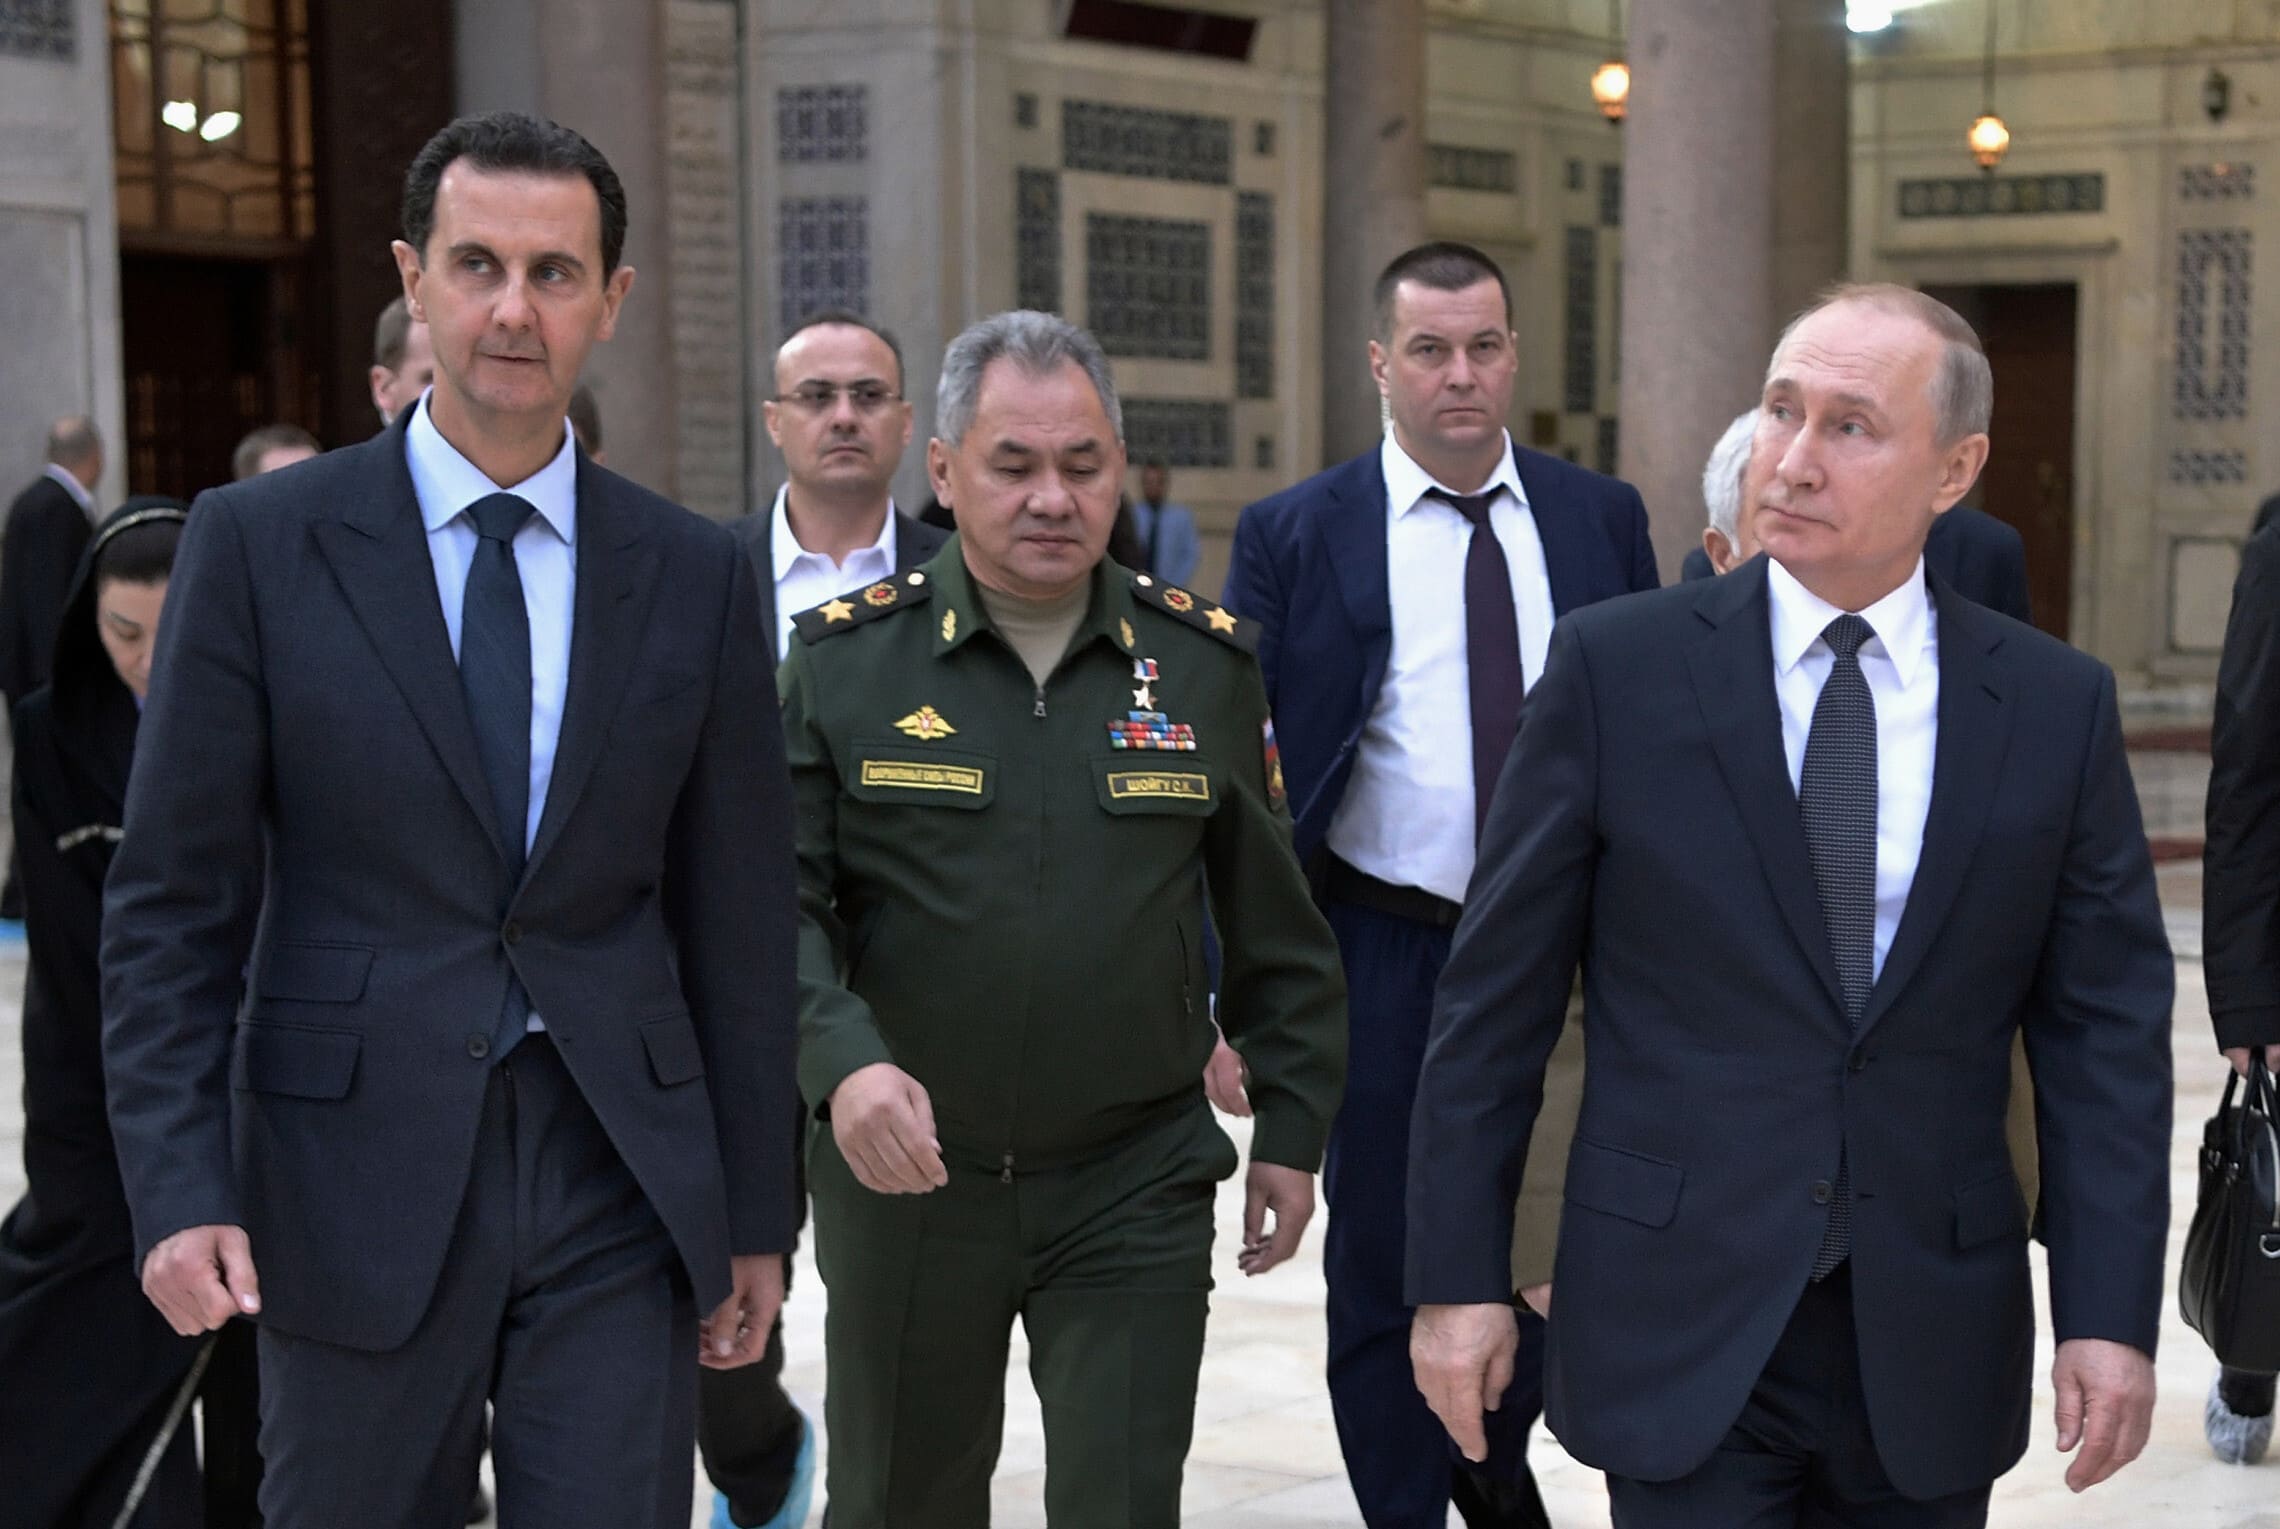 נשיא רוסיה ולדימיר פוטין, מימין, עם נשיא סוריה בשאר אל-אסד, משמאל, בדמשק. 7 בינואר 2020 (צילום: Alexei Nikolsky/Sputnik, Kremlin Pool Photo via AP)